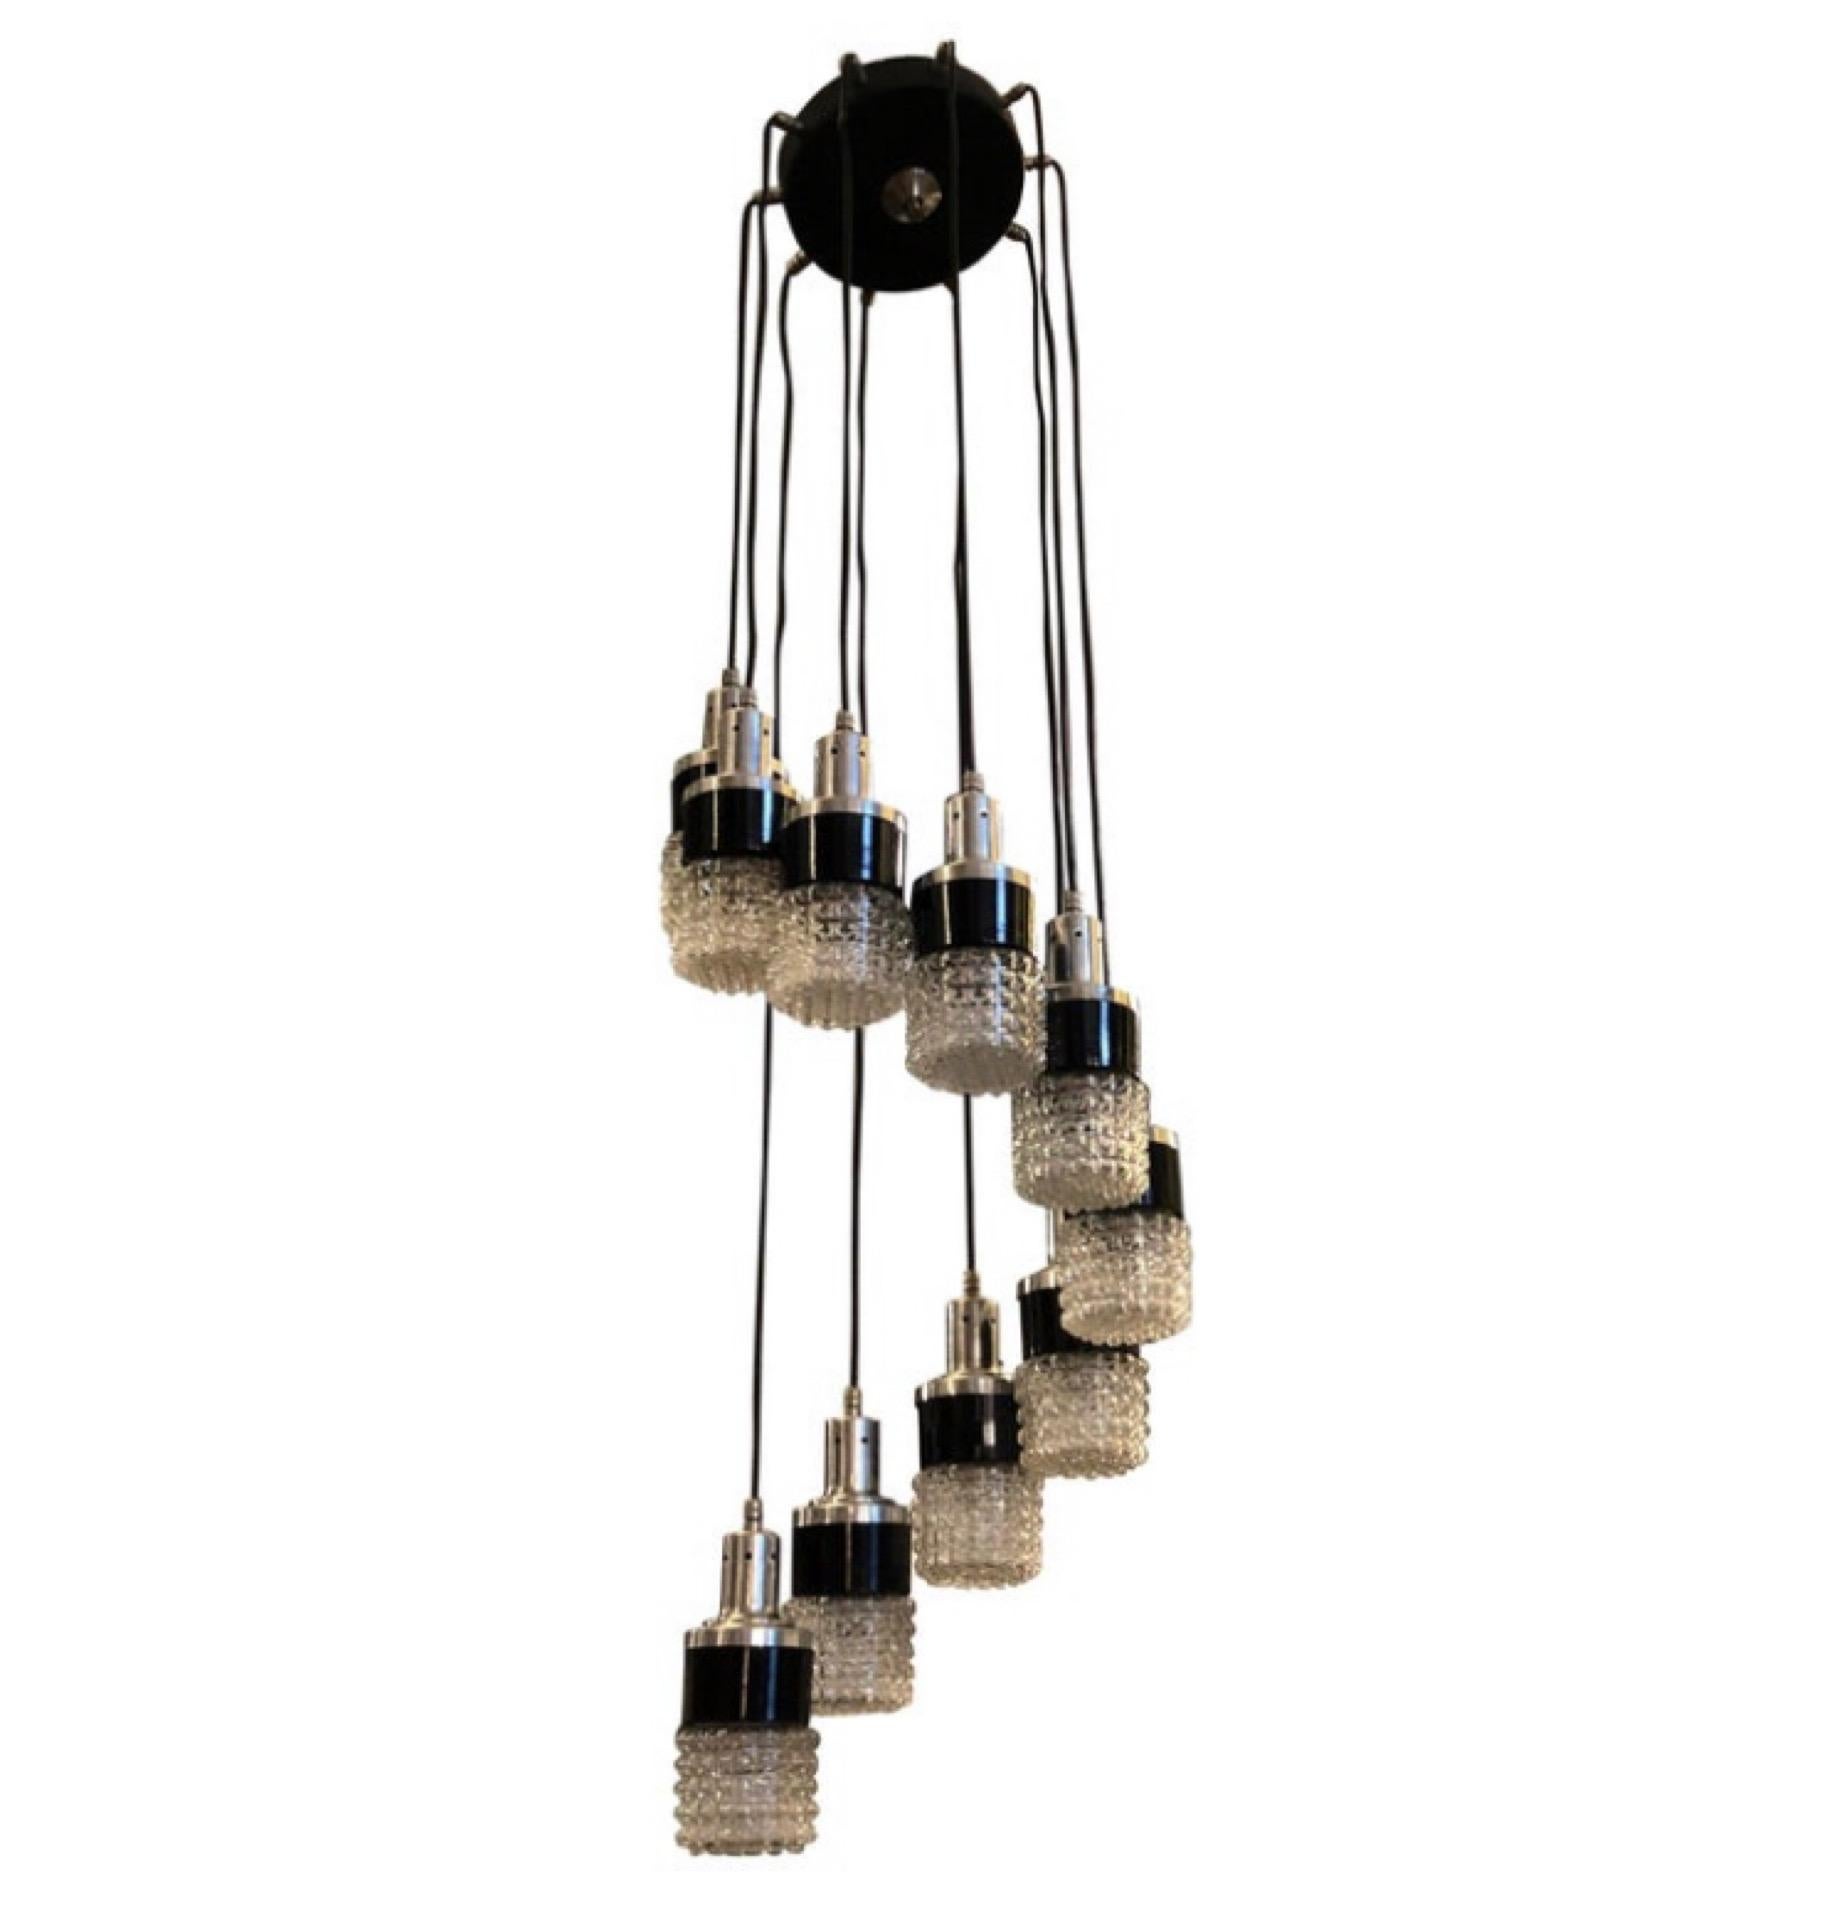 Un lustre en cascade à la manière de Stilnovo conçu et fabriqué en Italie dans les années soixante-dix dans des conditions parfaites. Elle fonctionne en 110-240 volts et nécessite dix ampoules e14 normales. C'est un luminaire intemporel et élégant